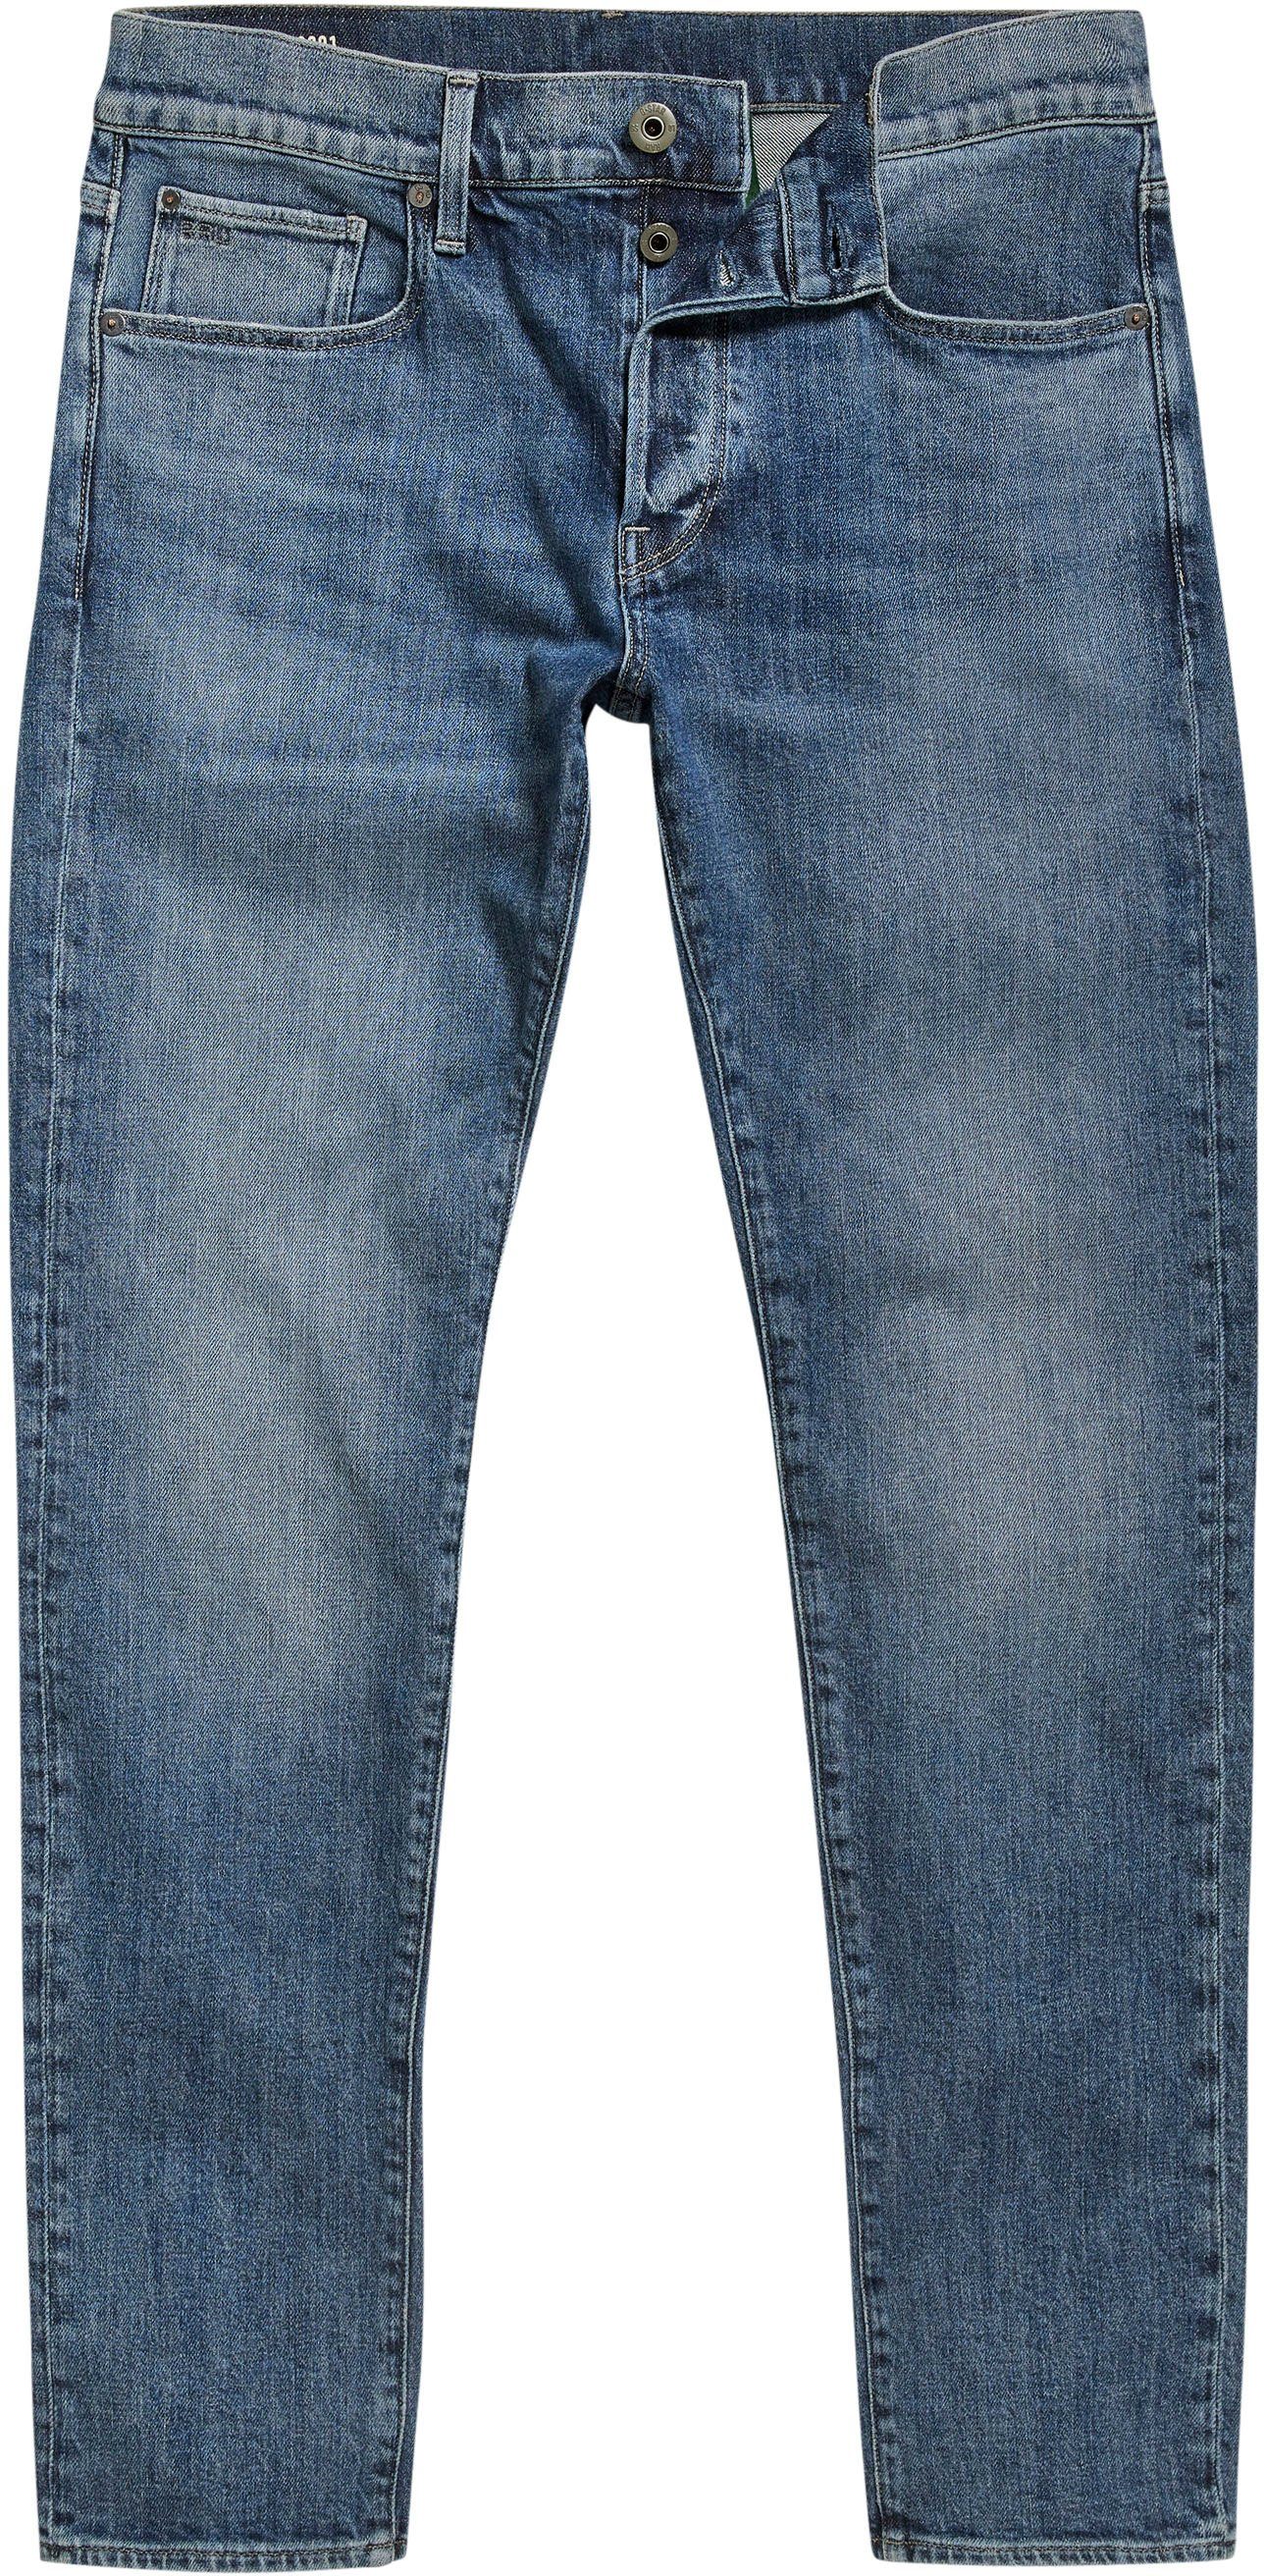 RAW G-Star 3301 Slim Slim-fit-Jeans faded santorini